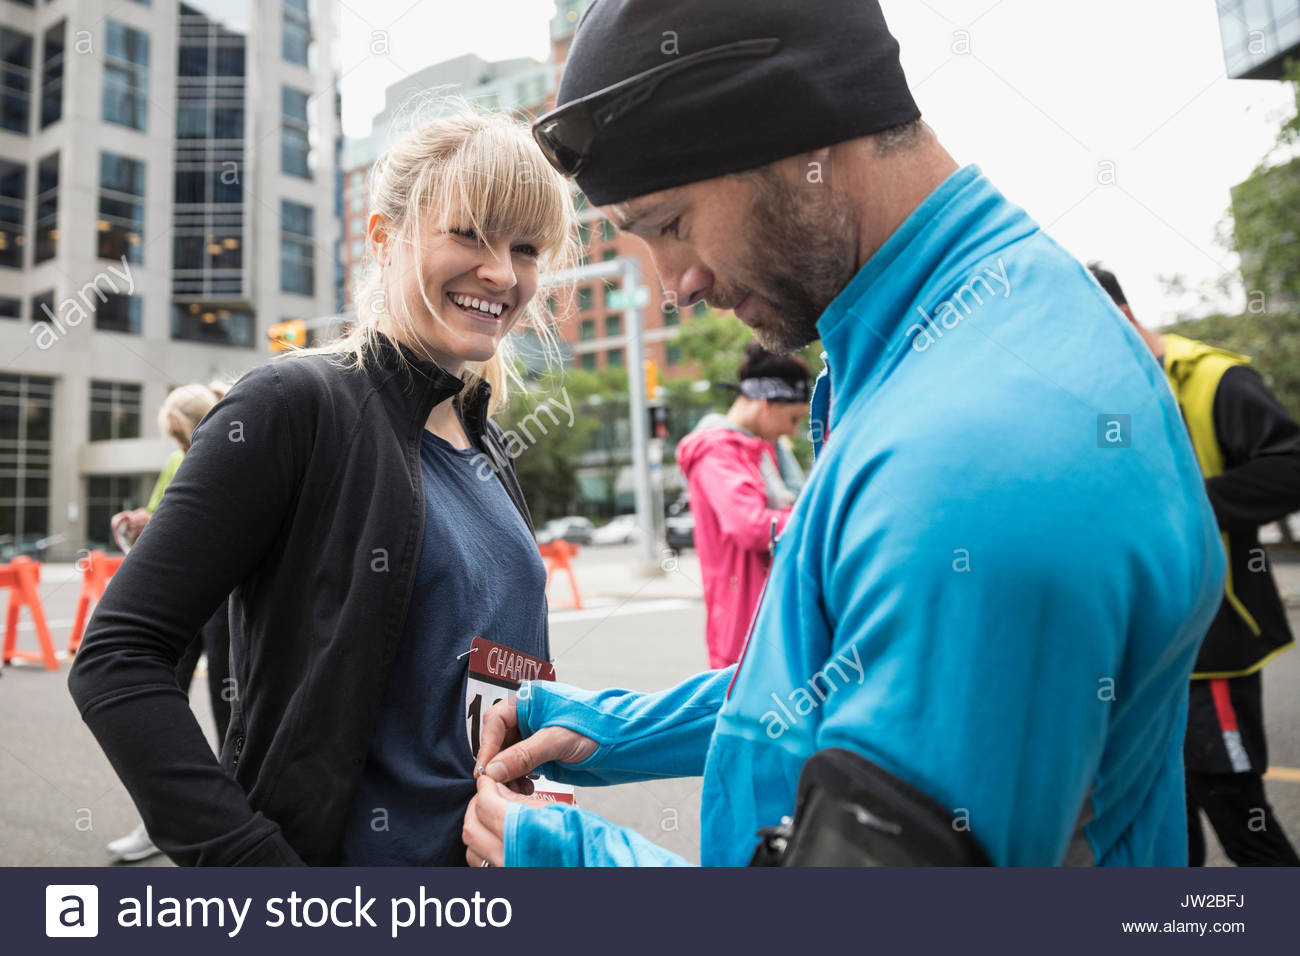 Mann helfen, lächelnde Frau auf Marathon bib auf Urban Street Stockfoto